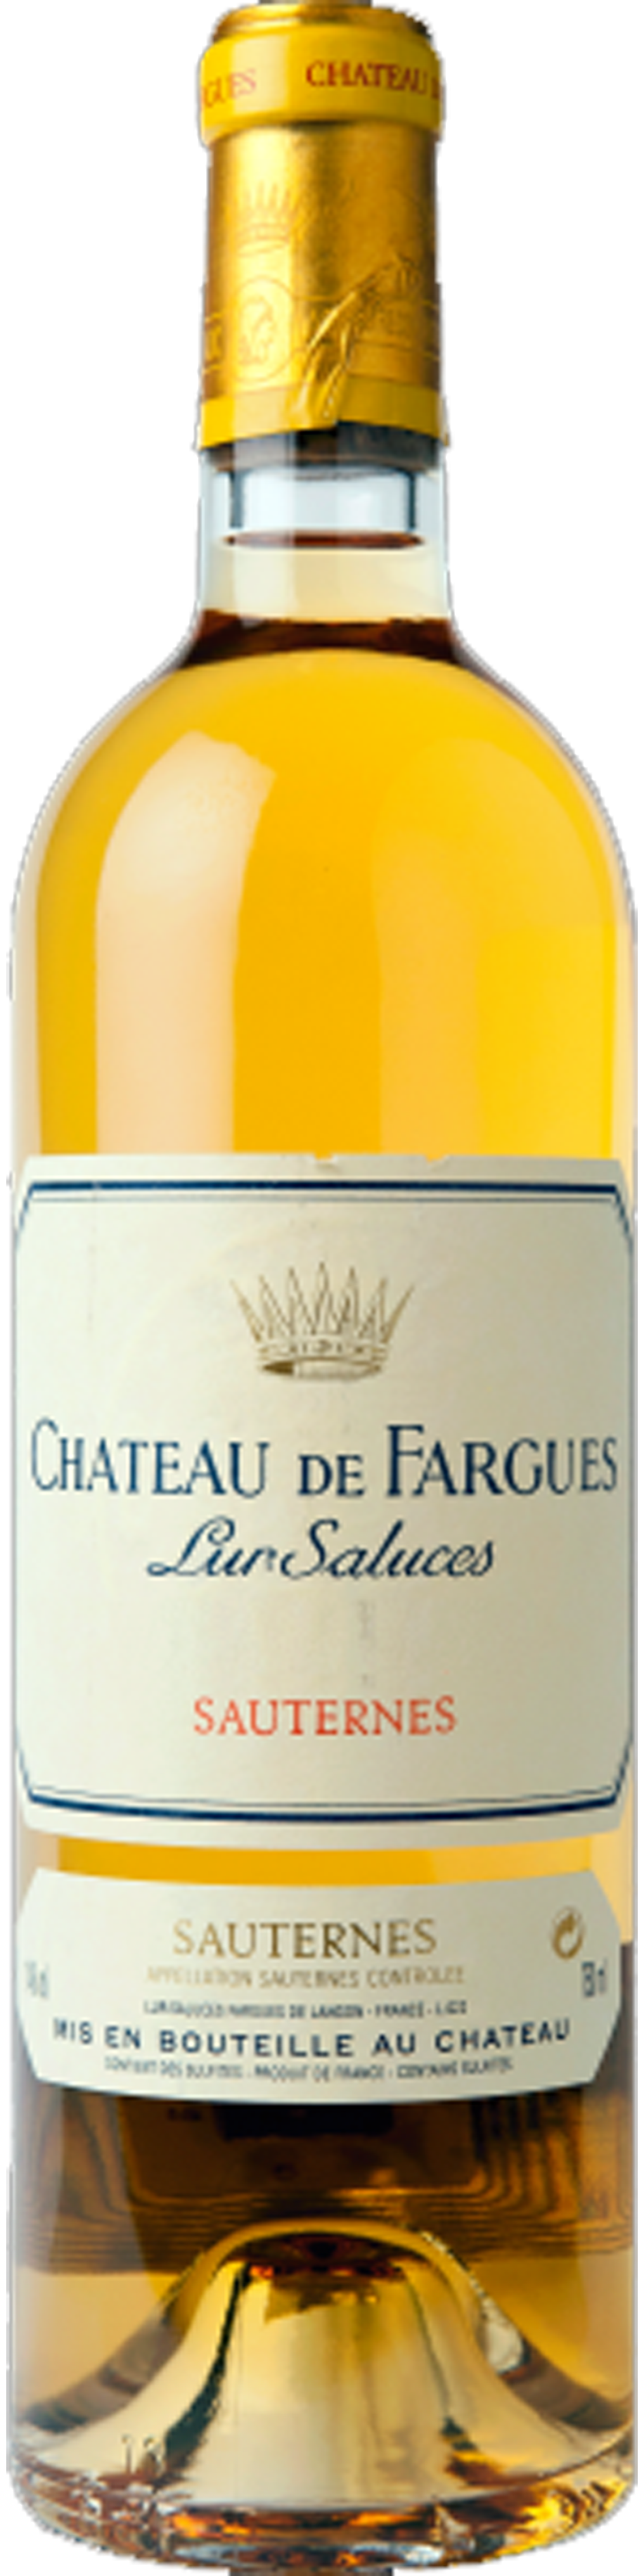 Bottle shot of 2009 Château de Fargues 2ème Cru Sauternes